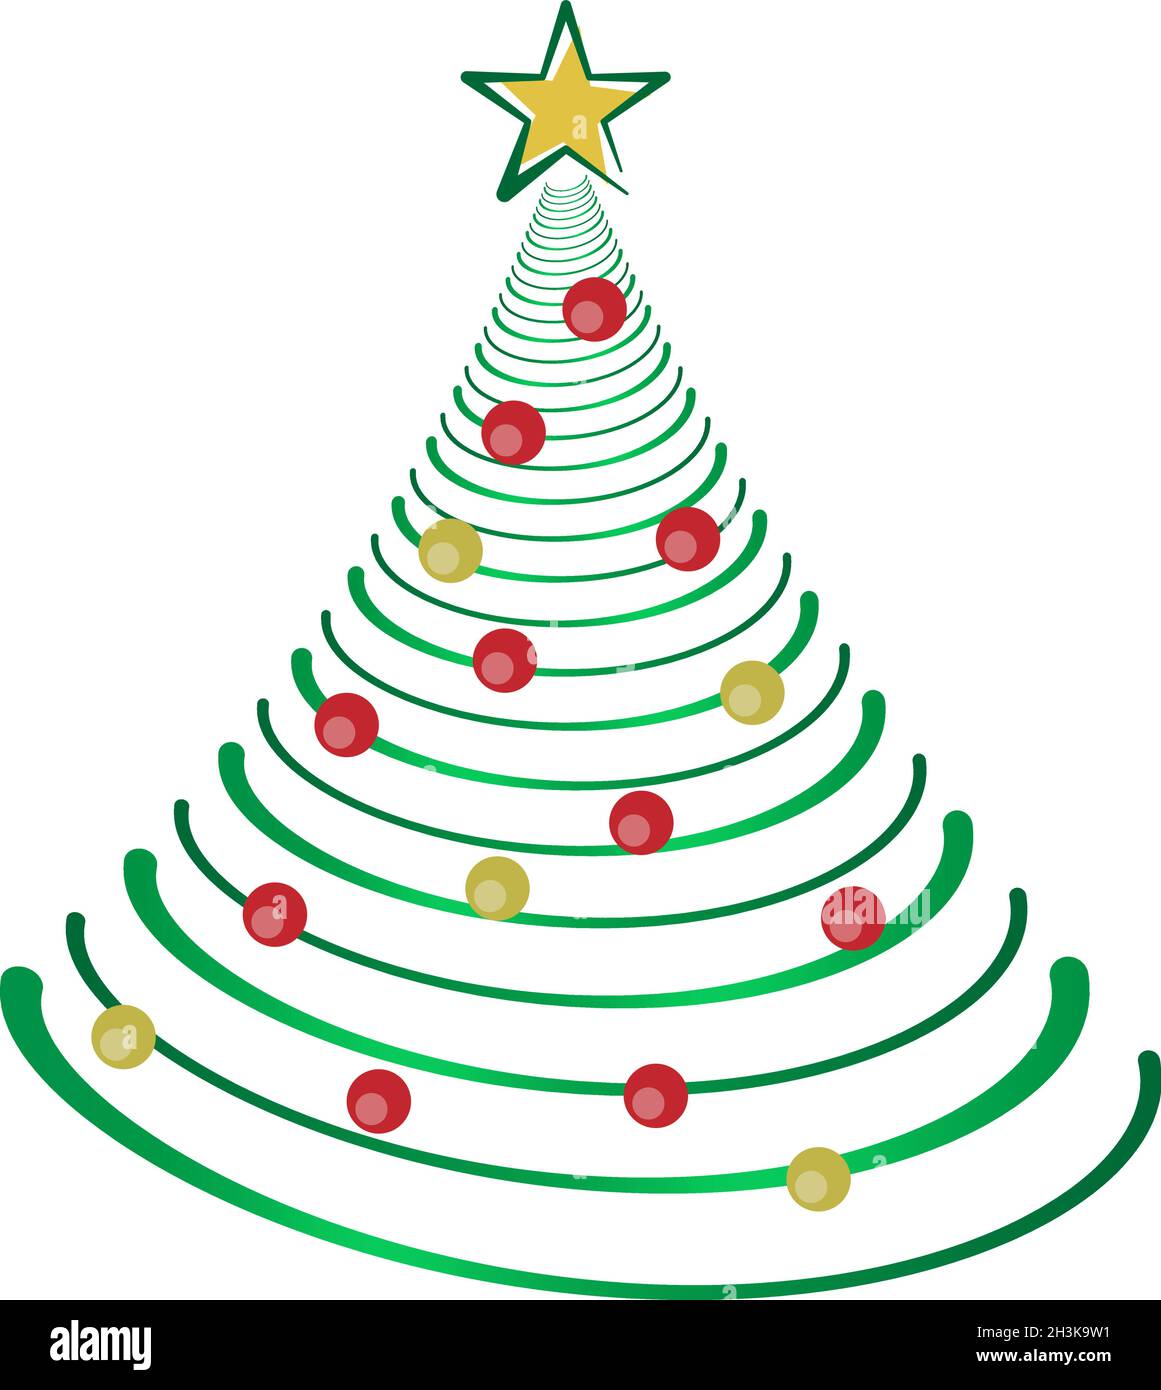 Illustrazione dell'albero di natale con palline di Natale rosse e dorate Illustrazione Vettoriale